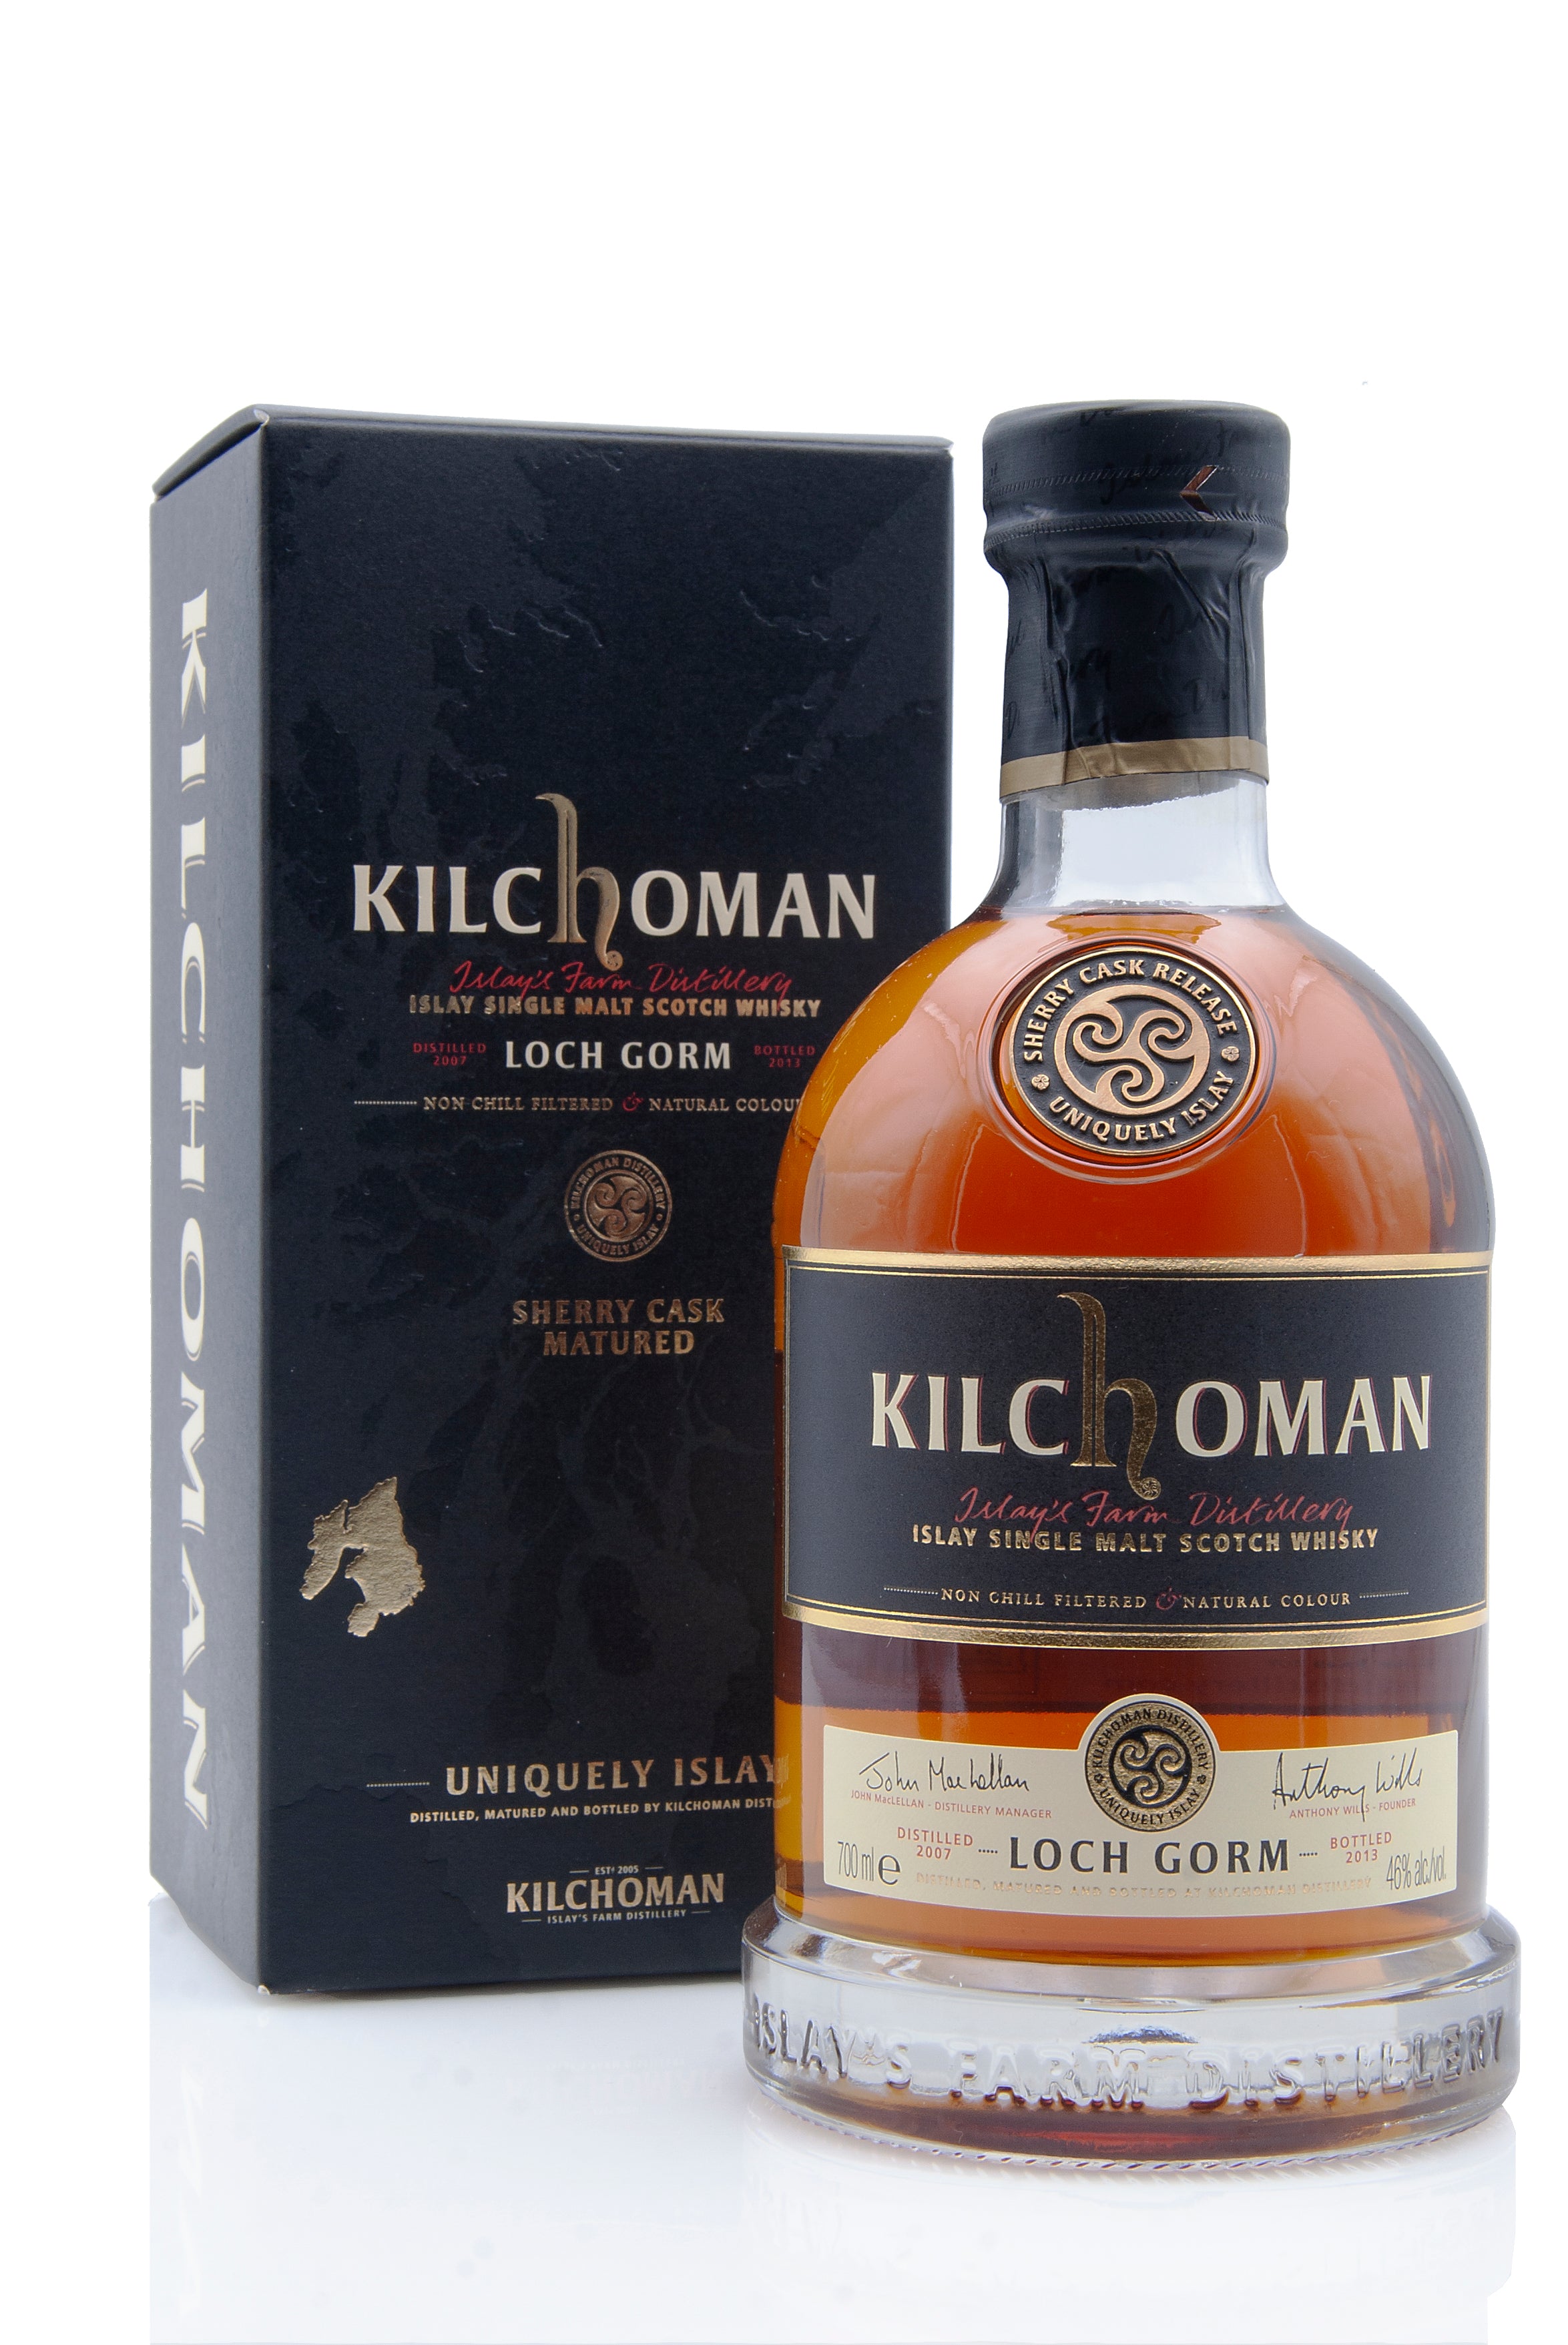 Kilchoman Loch Gorm 2013 Release | Abbey Whisky Online